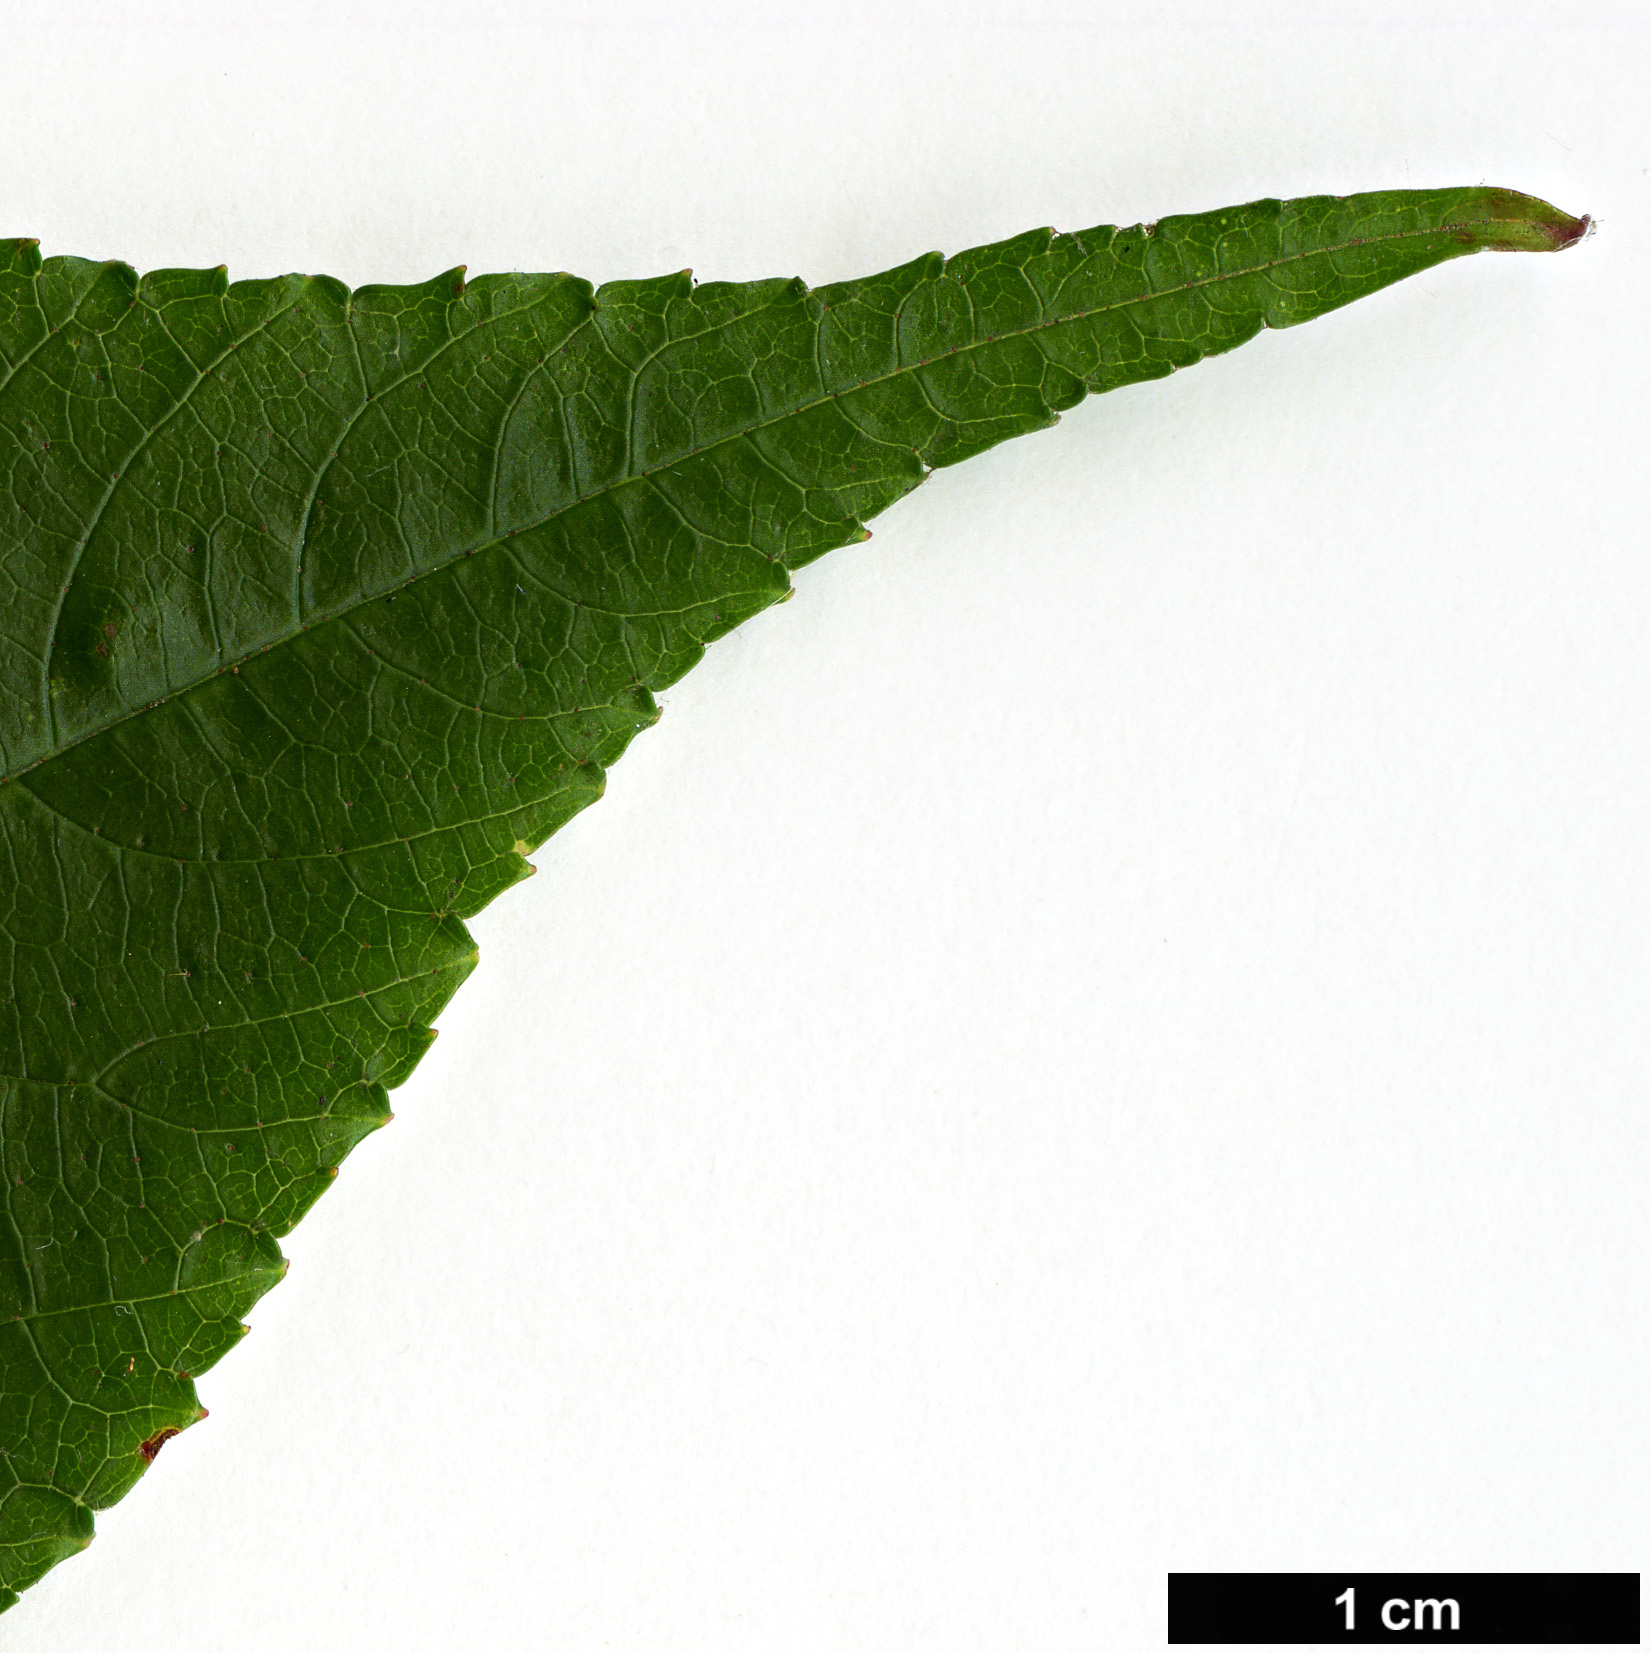 High resolution image: Family: Rosaceae - Genus: Rubus - Taxon: paucidentatus